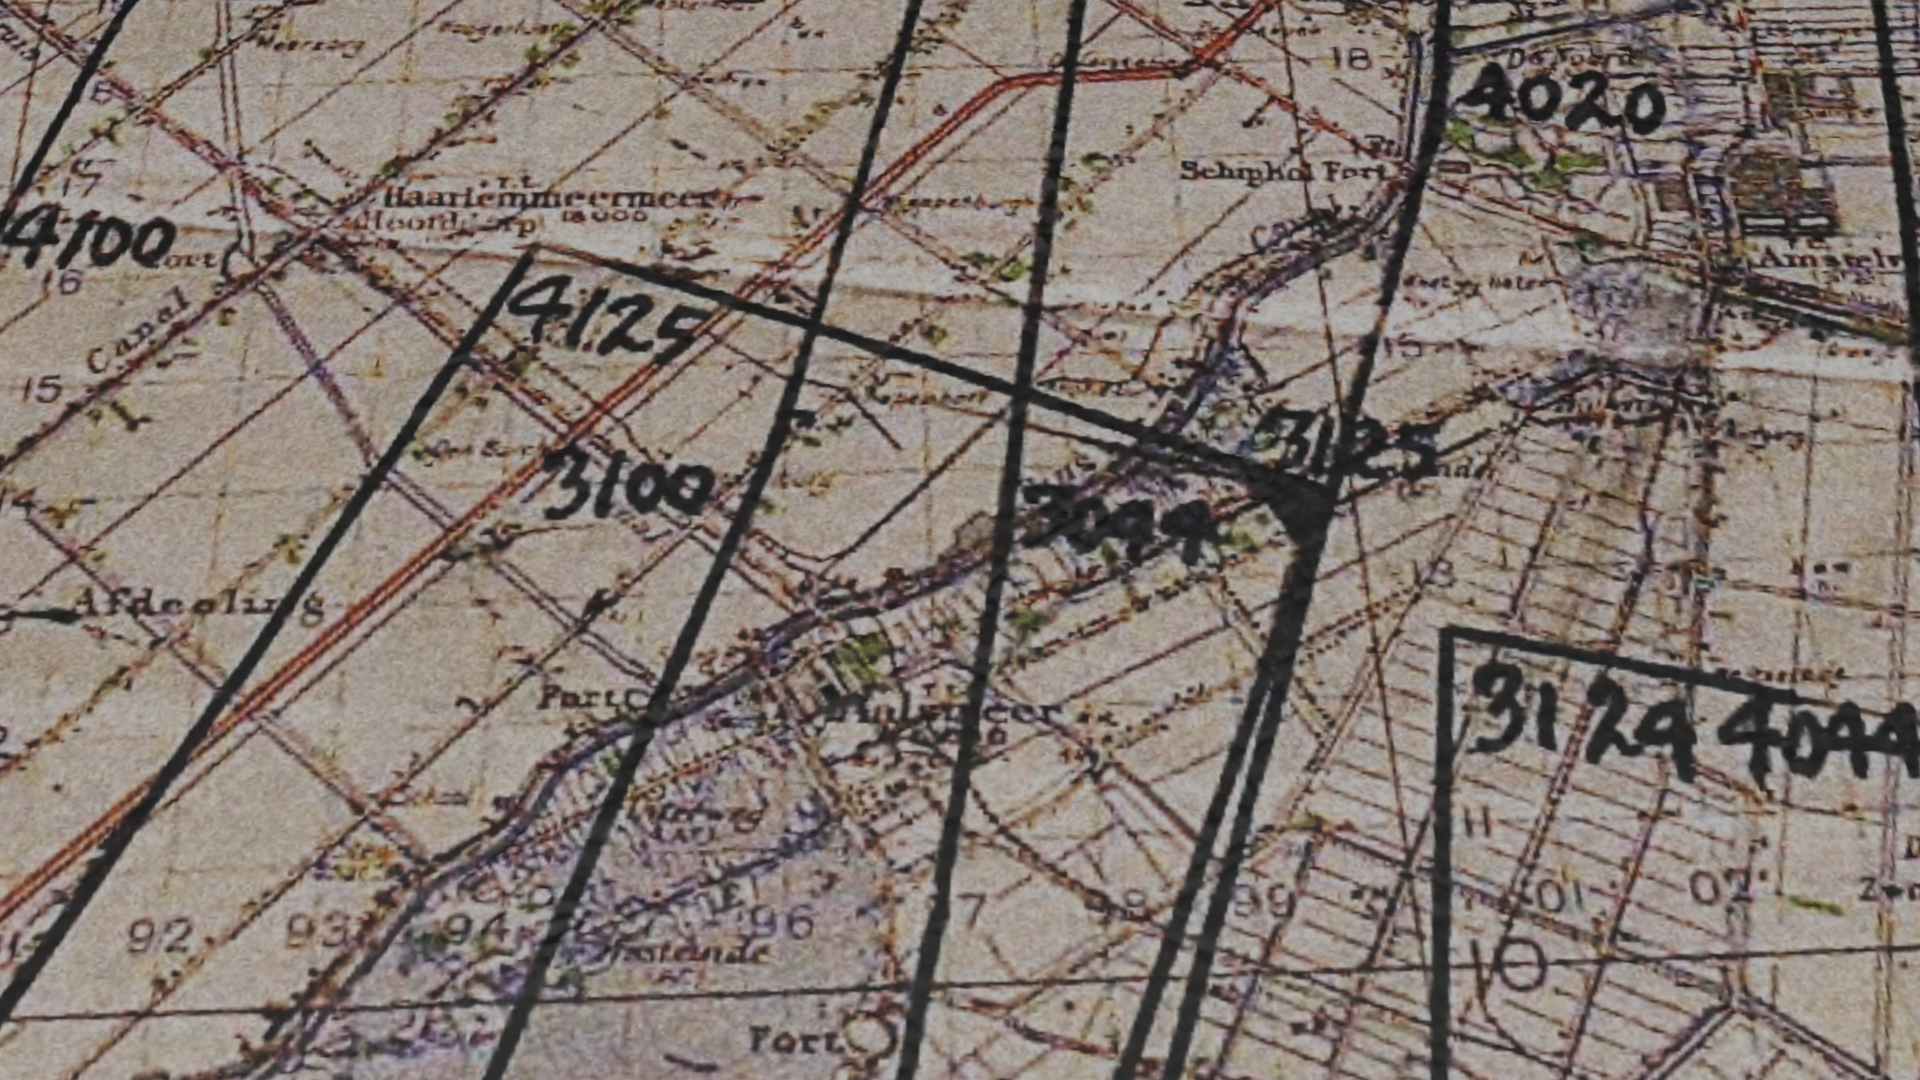 Luftbildrecherche auf einer alten Karten mit verschiedenen handgeschriebenen Markierungen darauf